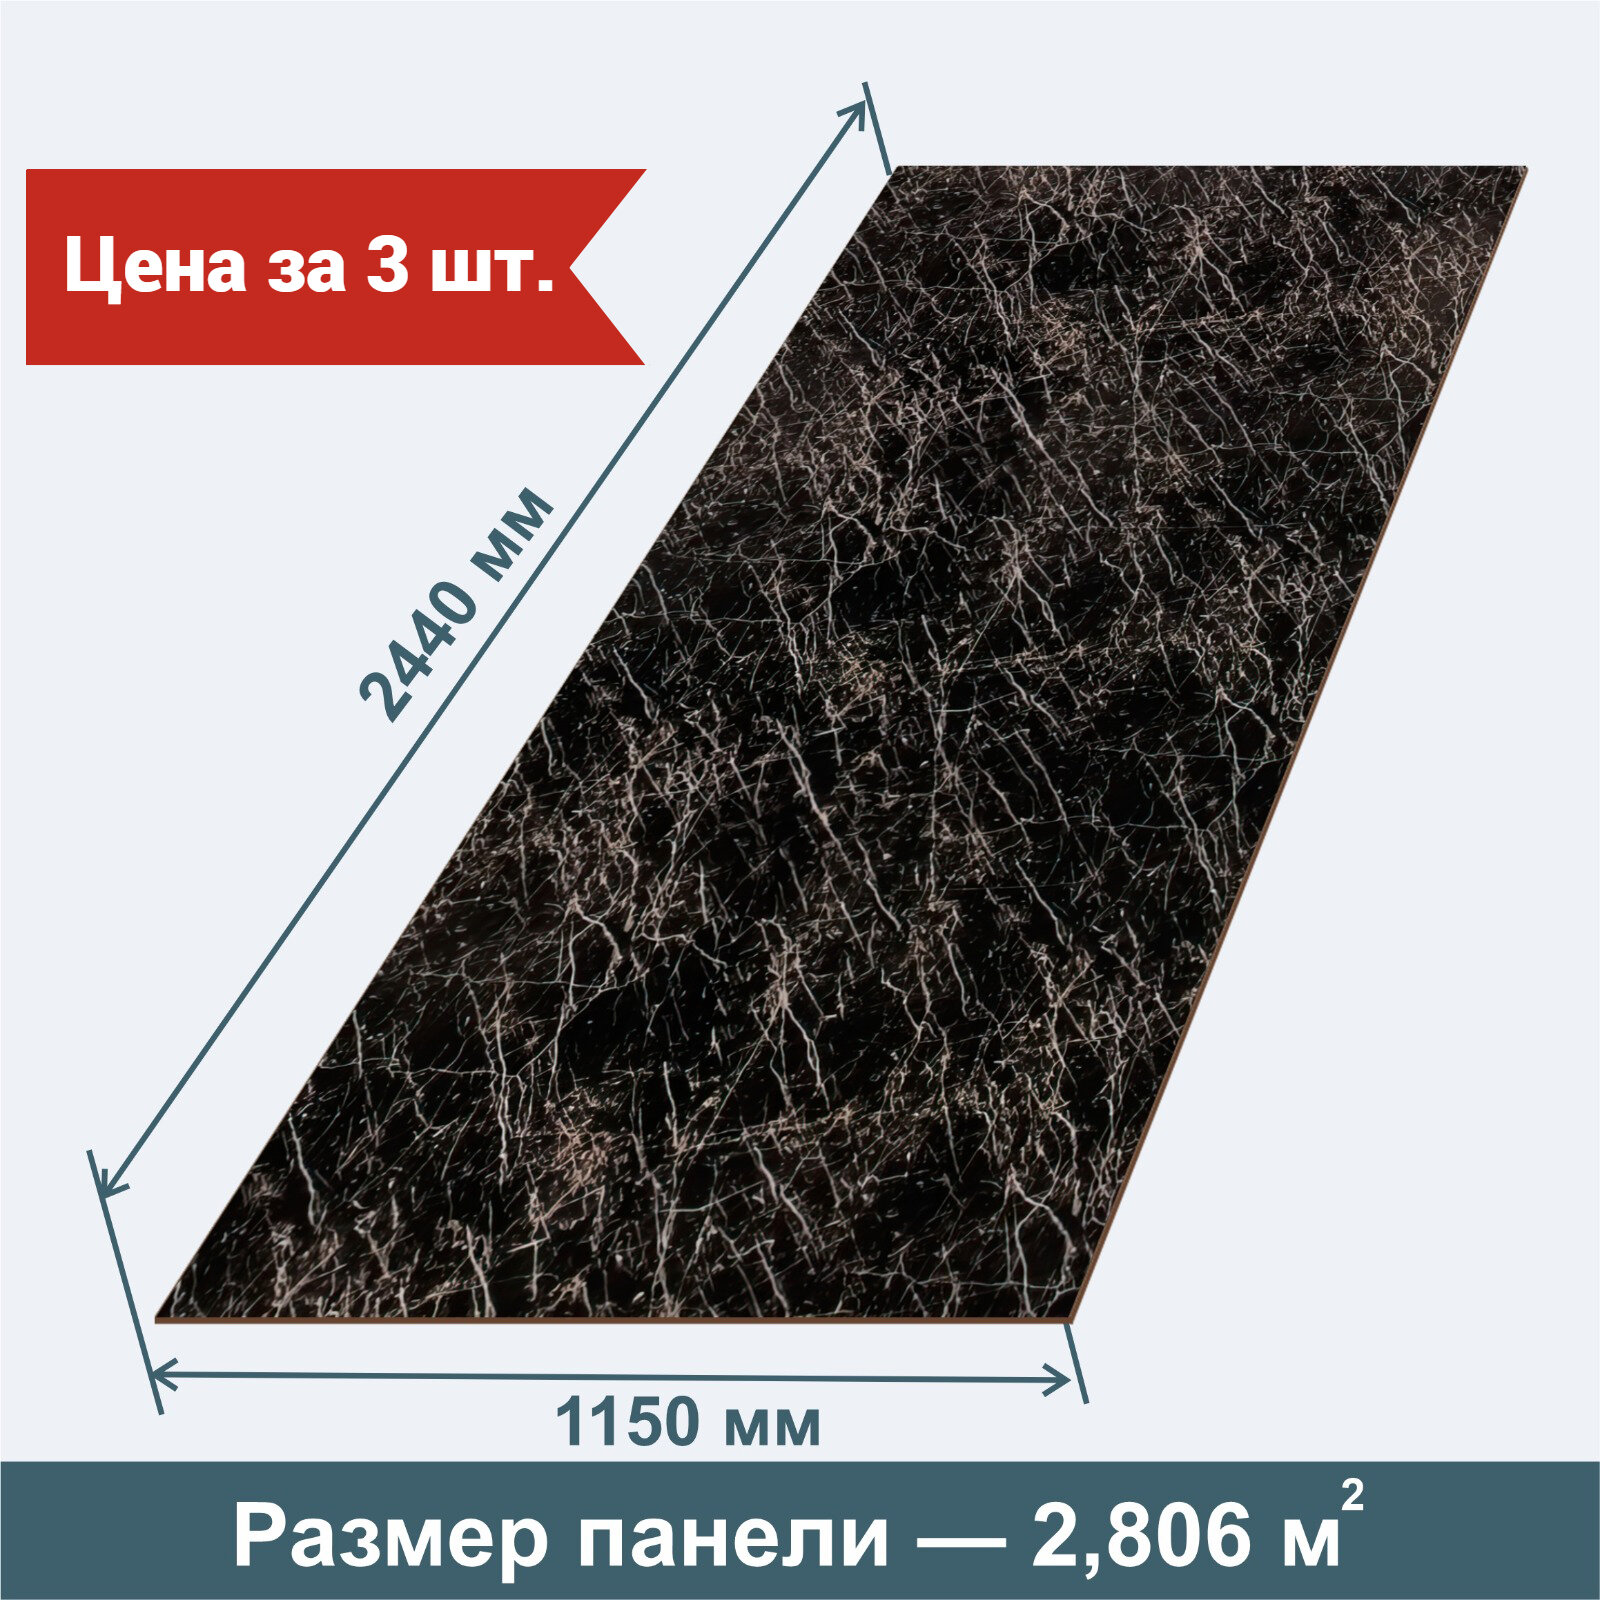 Стеновая Панель из МДФ RashDecor артдизайн (влагостойкая) Мрамор Черный 2440х1150х32 мм